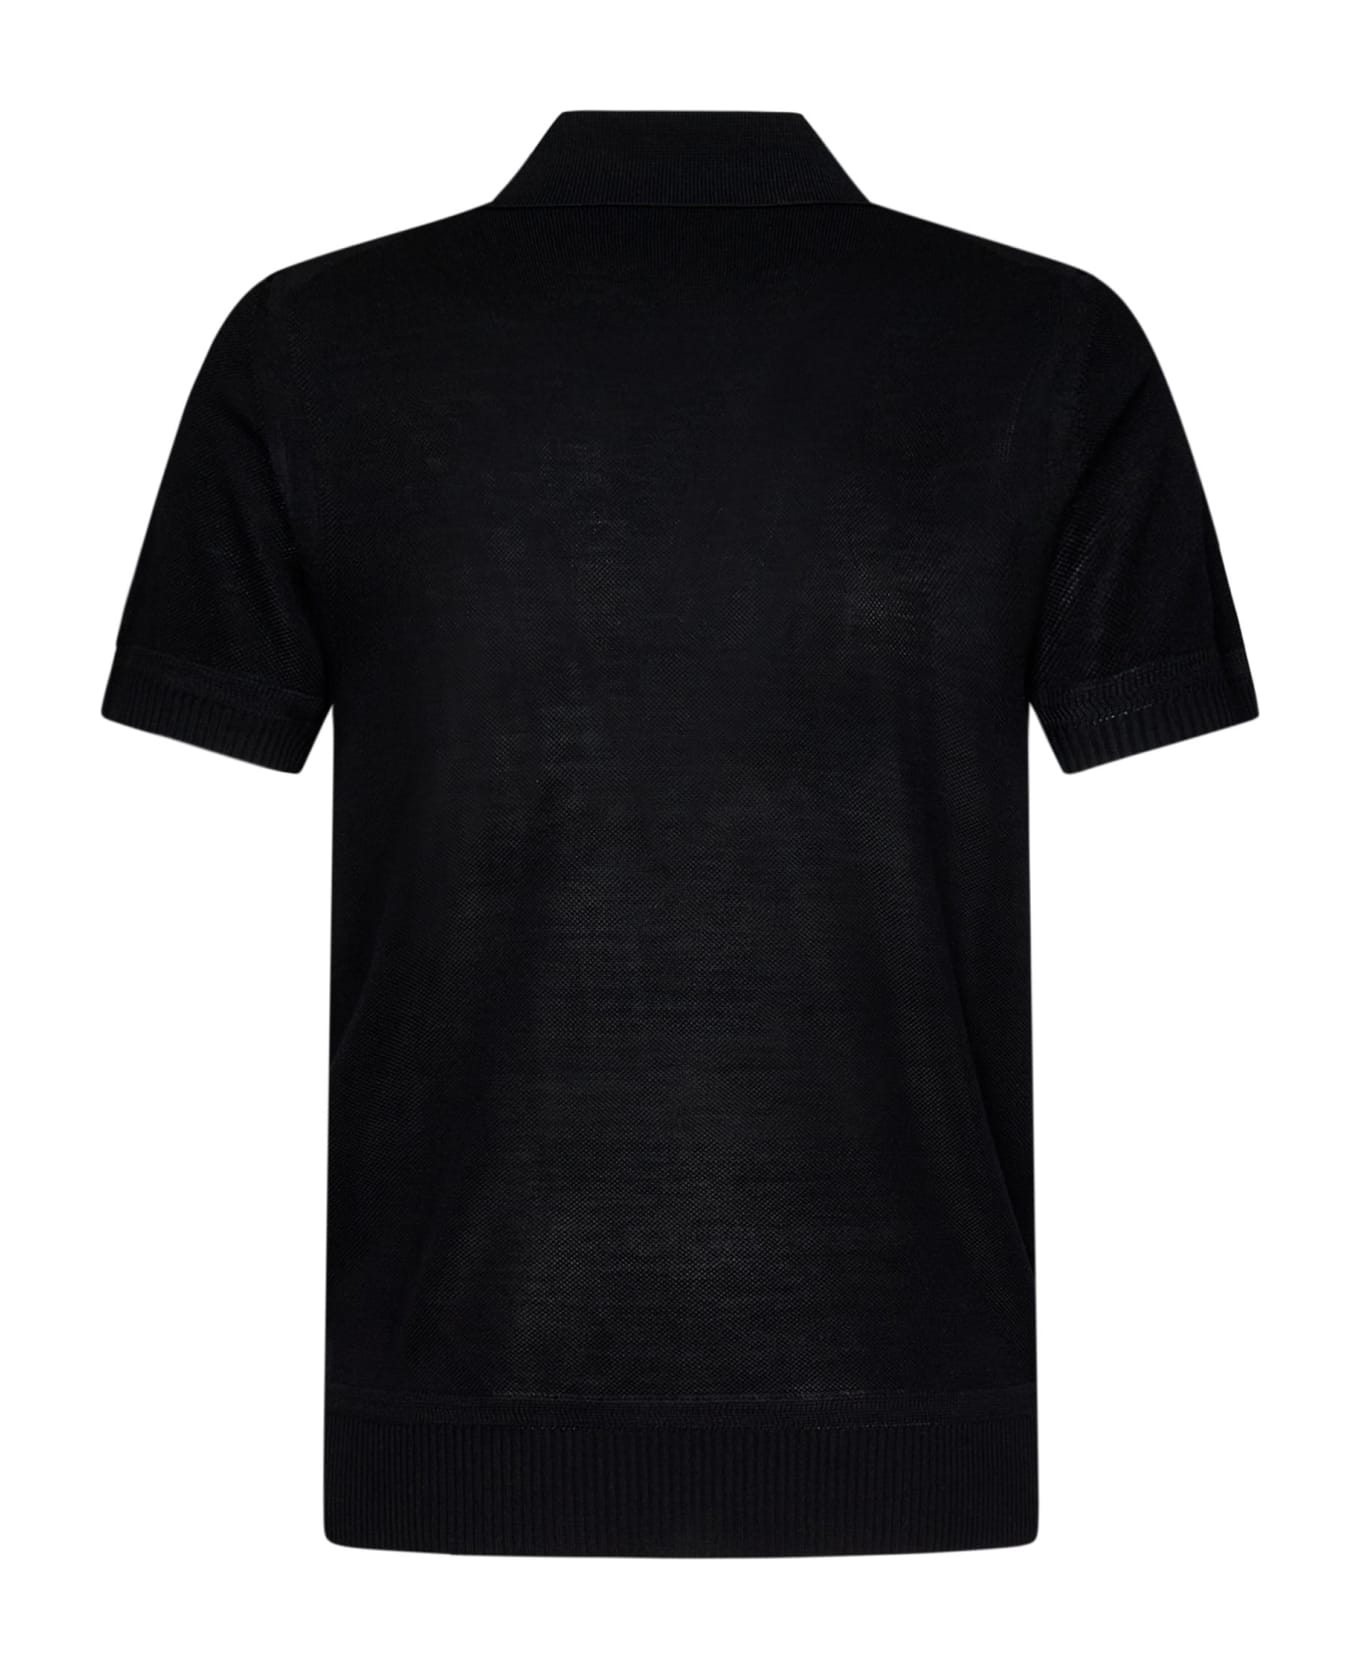 Tom Ford Polo Shirt - Black ポロシャツ